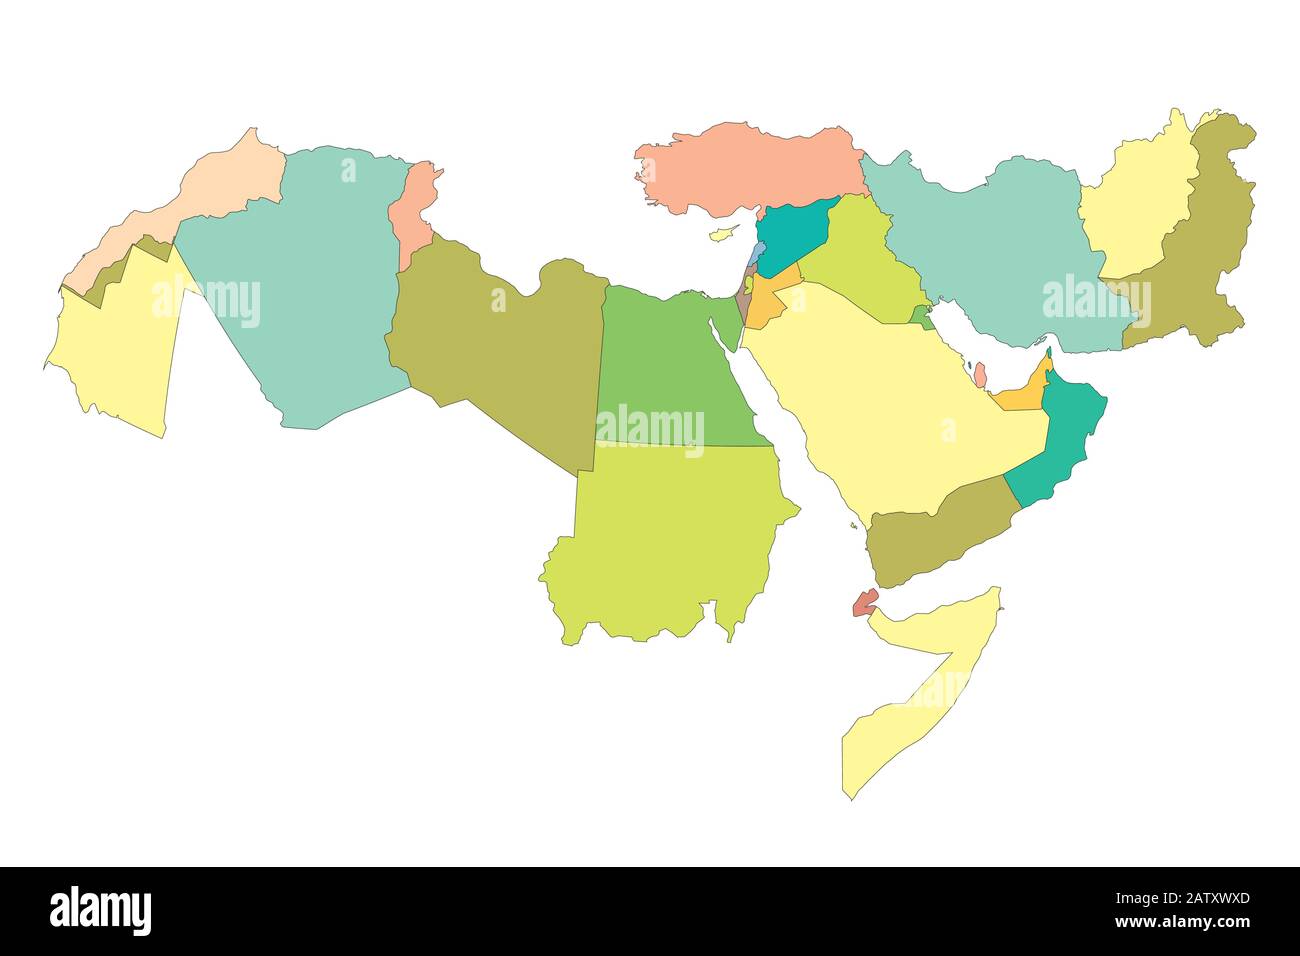 Mappa Del Grande Medio Oriente con confini di paesi Illustrazione Vettoriale